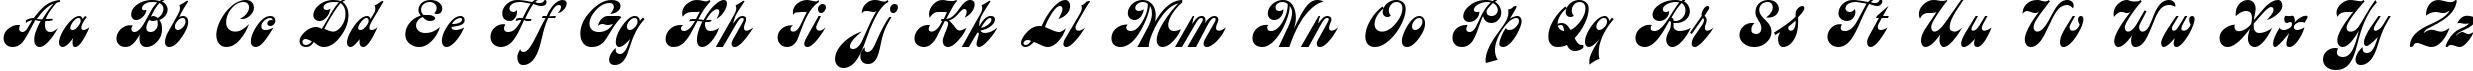 Пример написания английского алфавита шрифтом AstronCTT